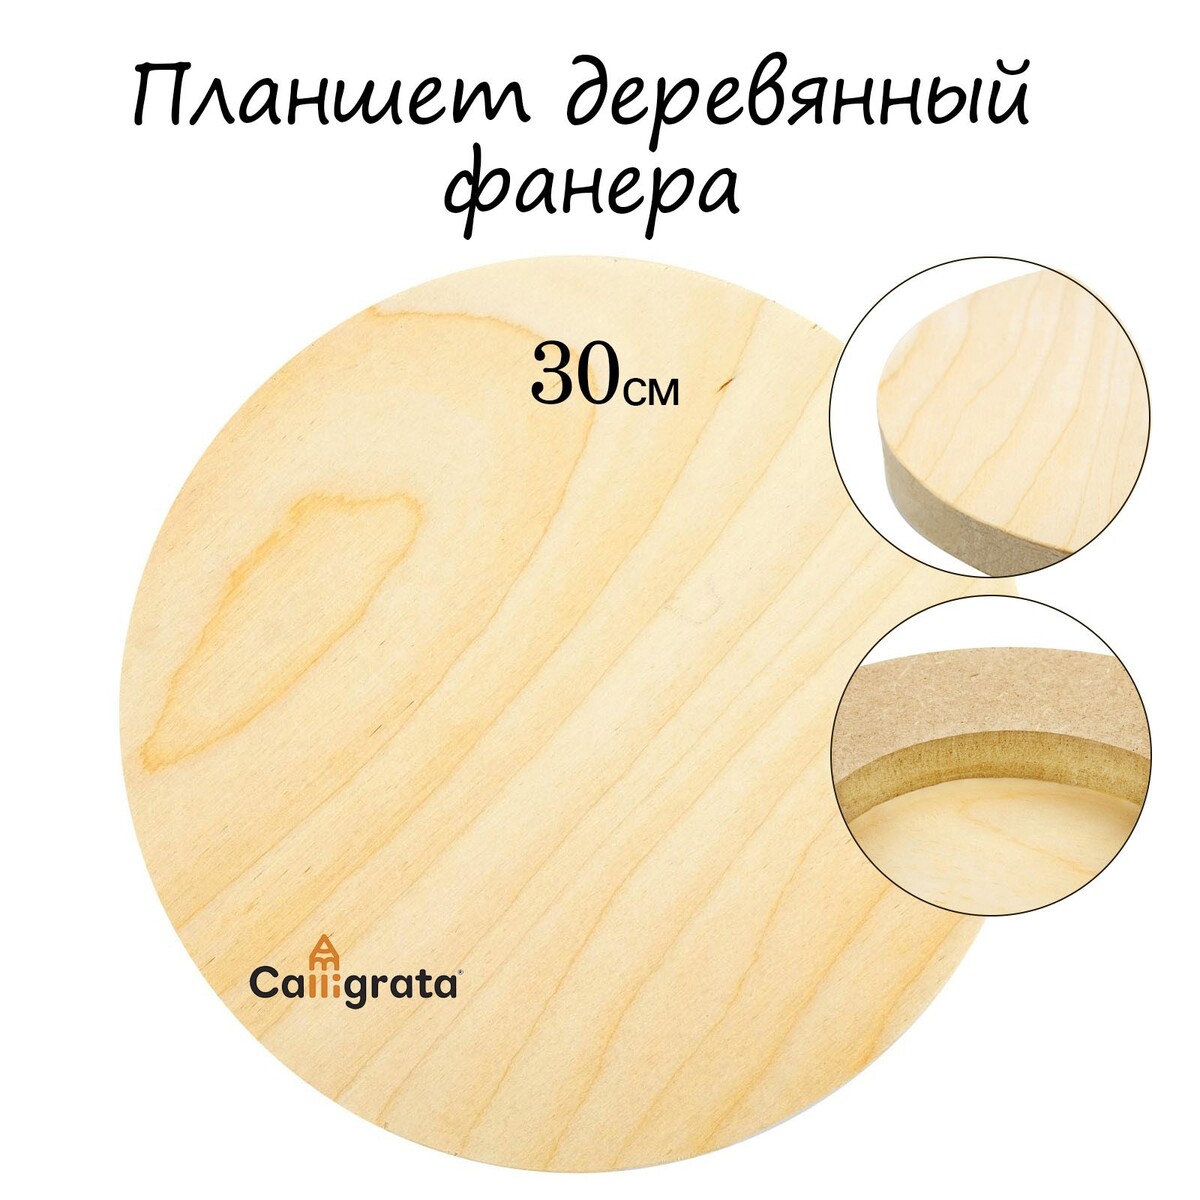 Планшет круглый деревянный фанера d-30 х 2 см, сосна, calligrata планшет деревянный 40 х 50 х 2 см двп